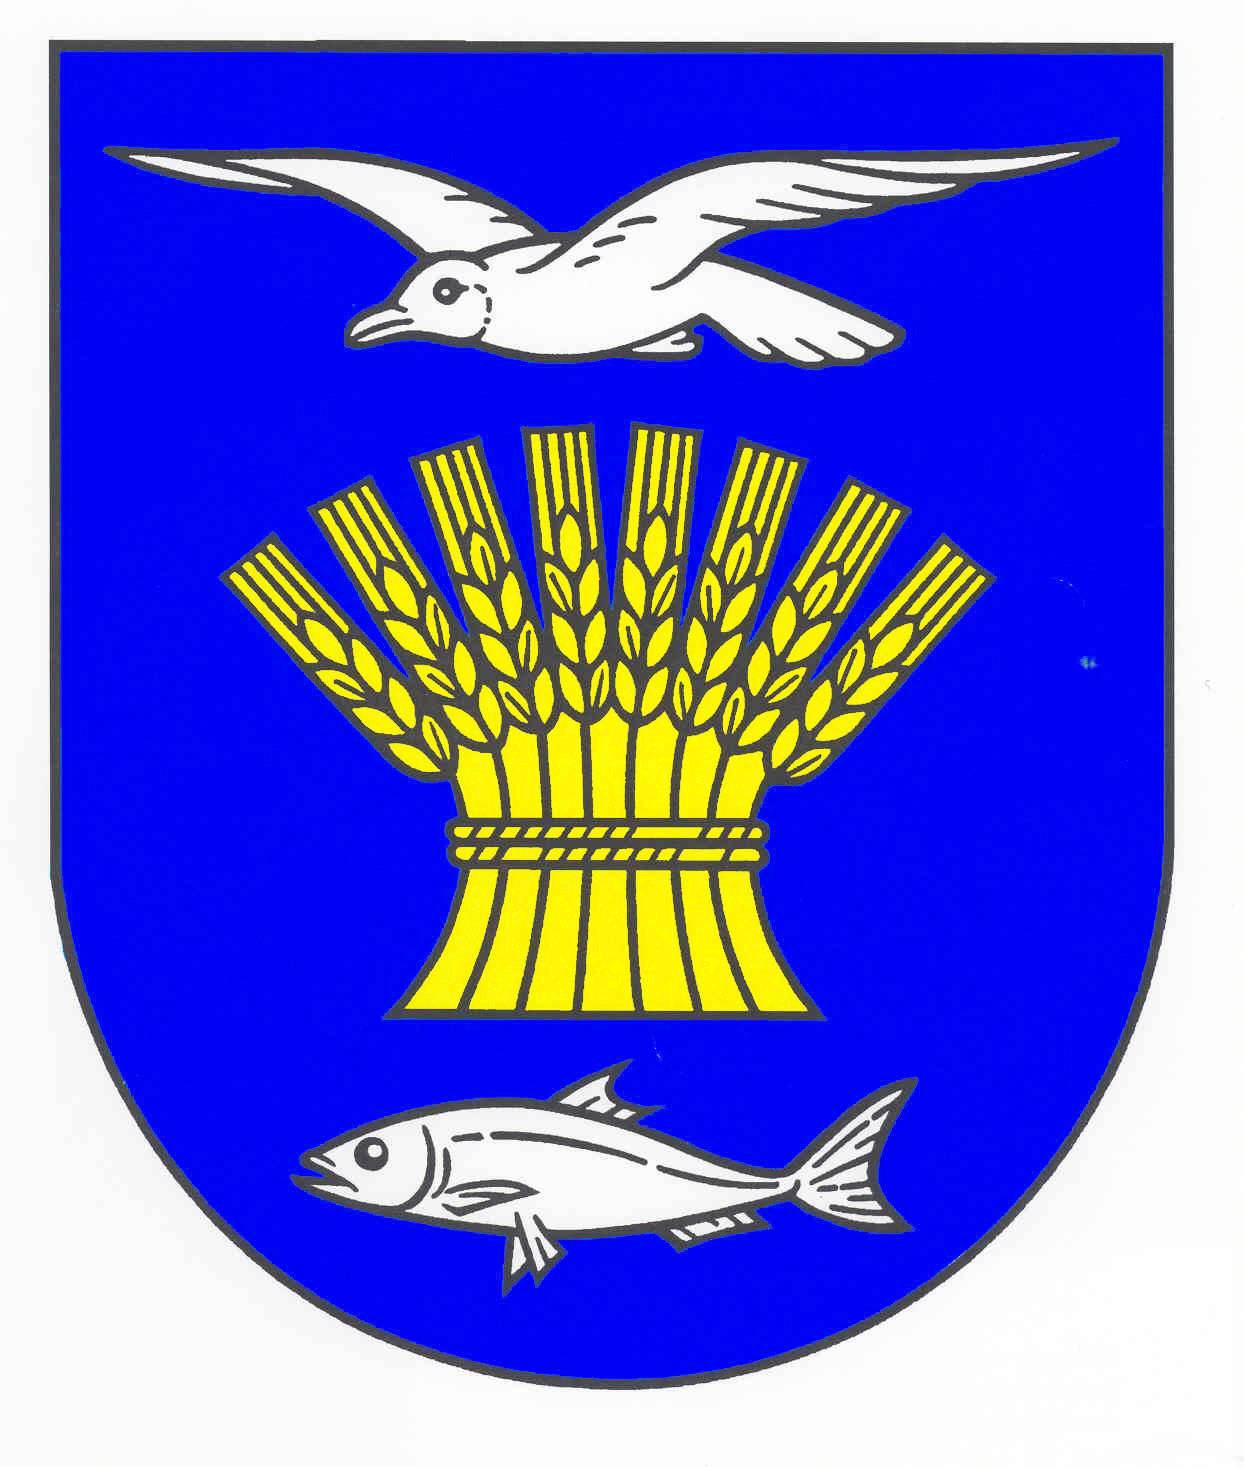 Wappen Gemeinde Sierksdorf, Kreis Ostholstein